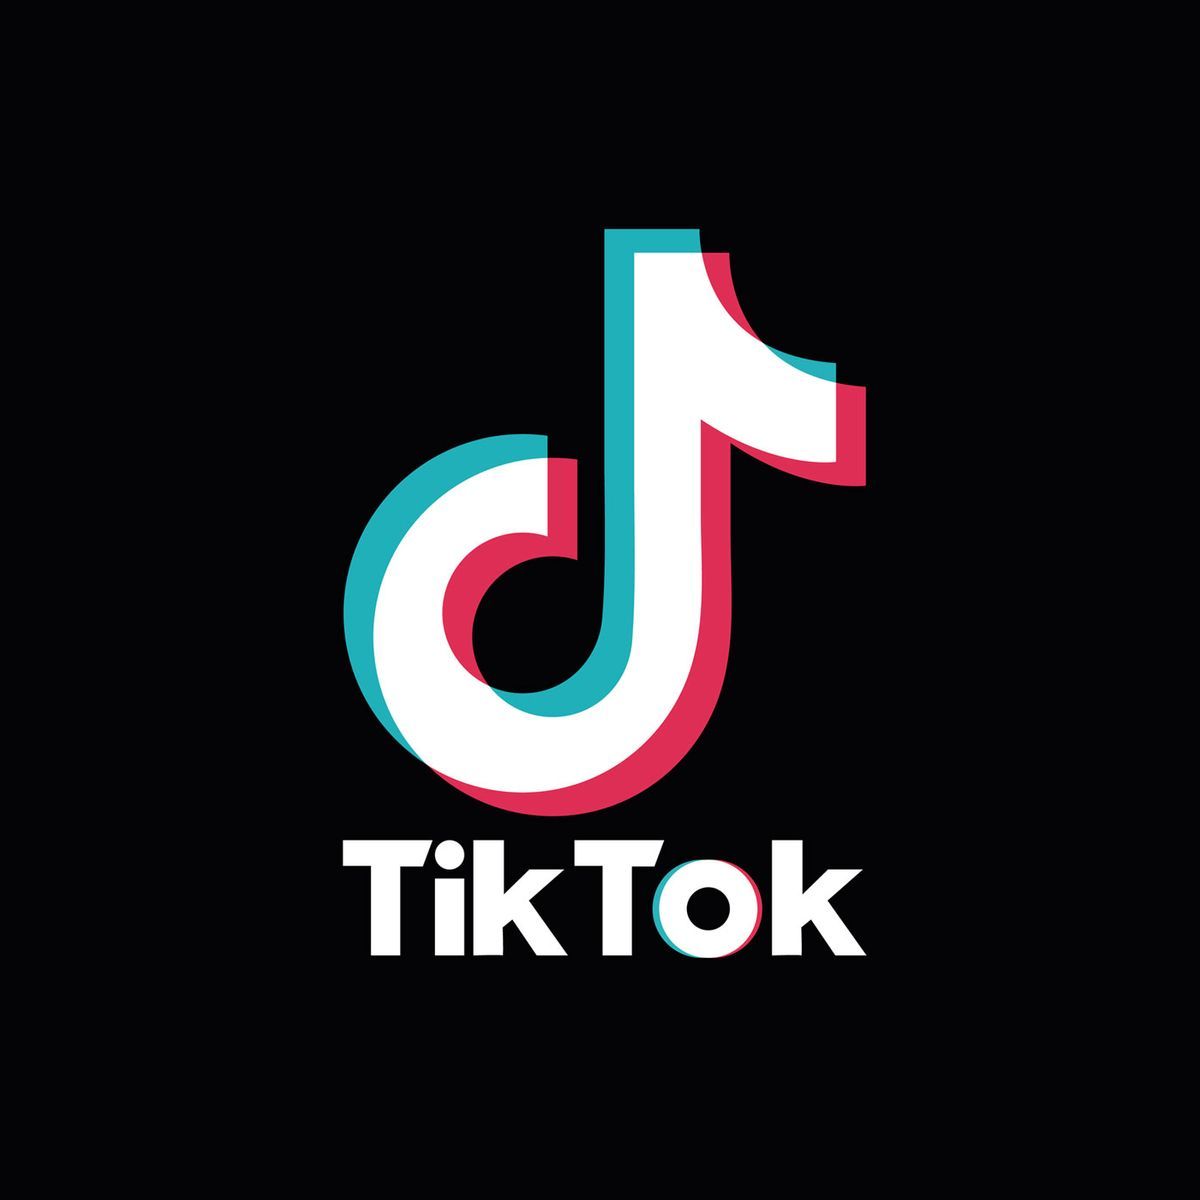 La aplicación de Tik Tok será borrada